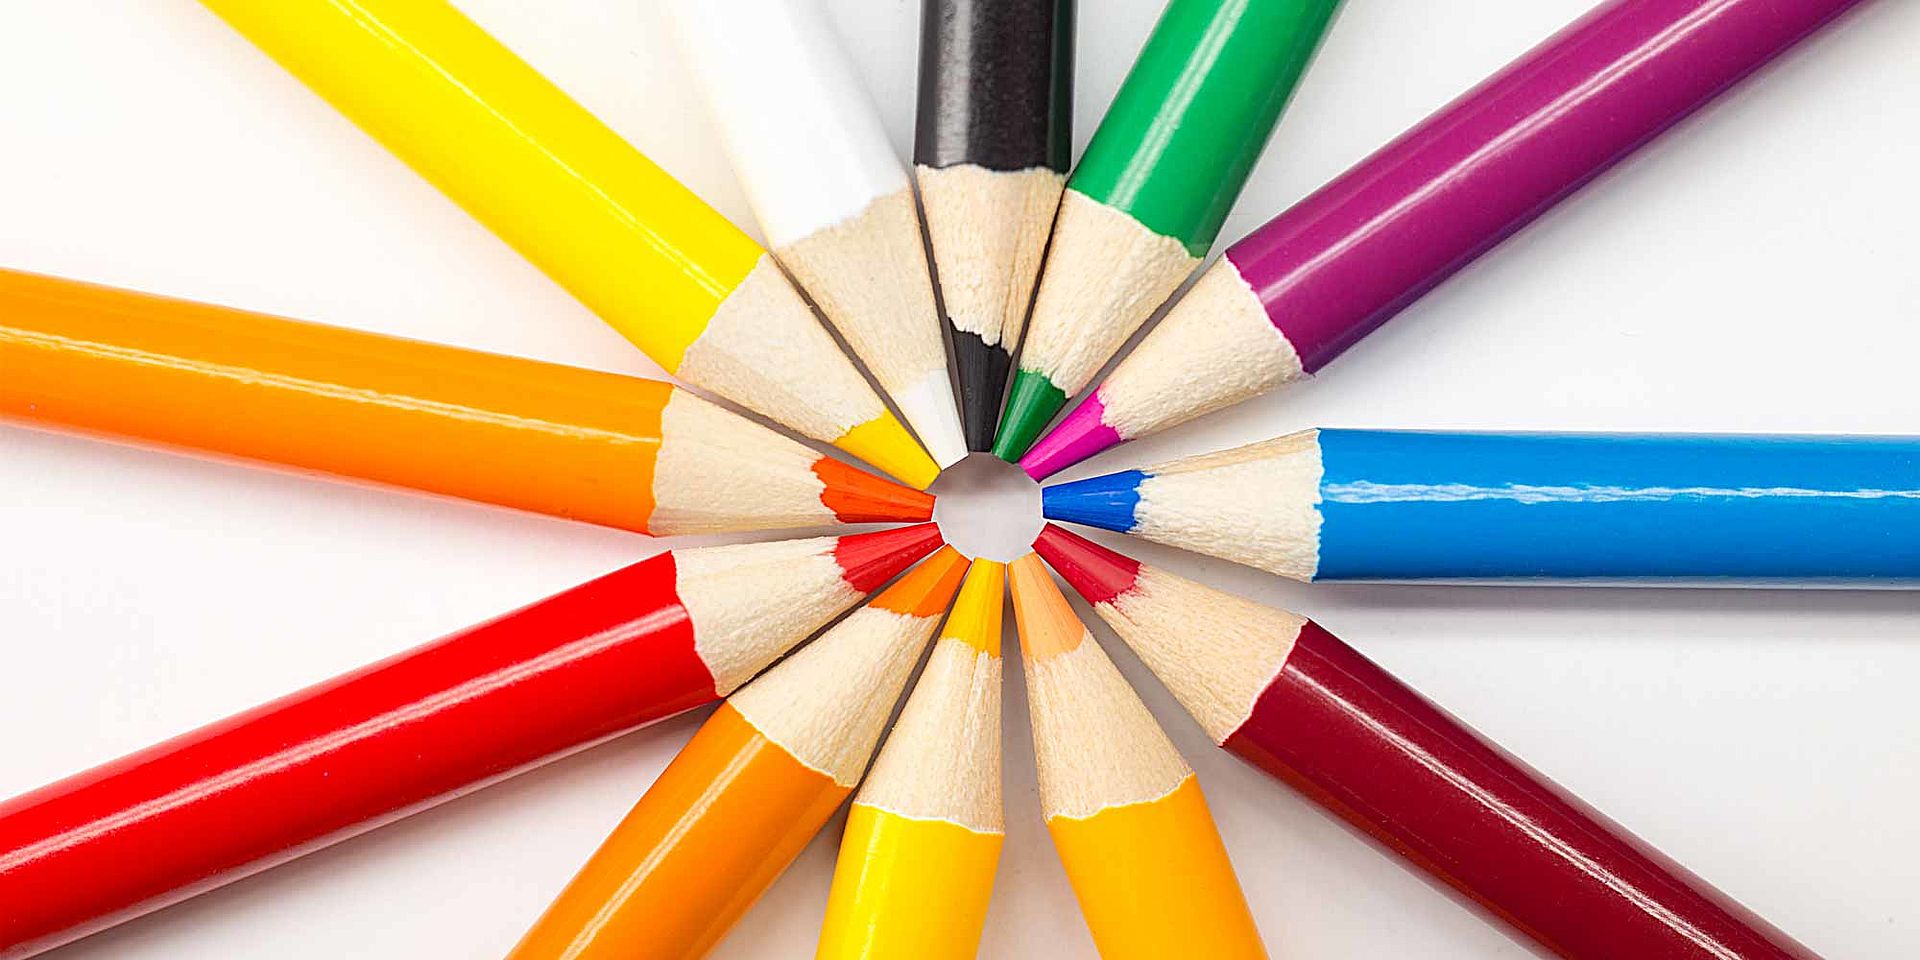 Immagine di matite colorate 